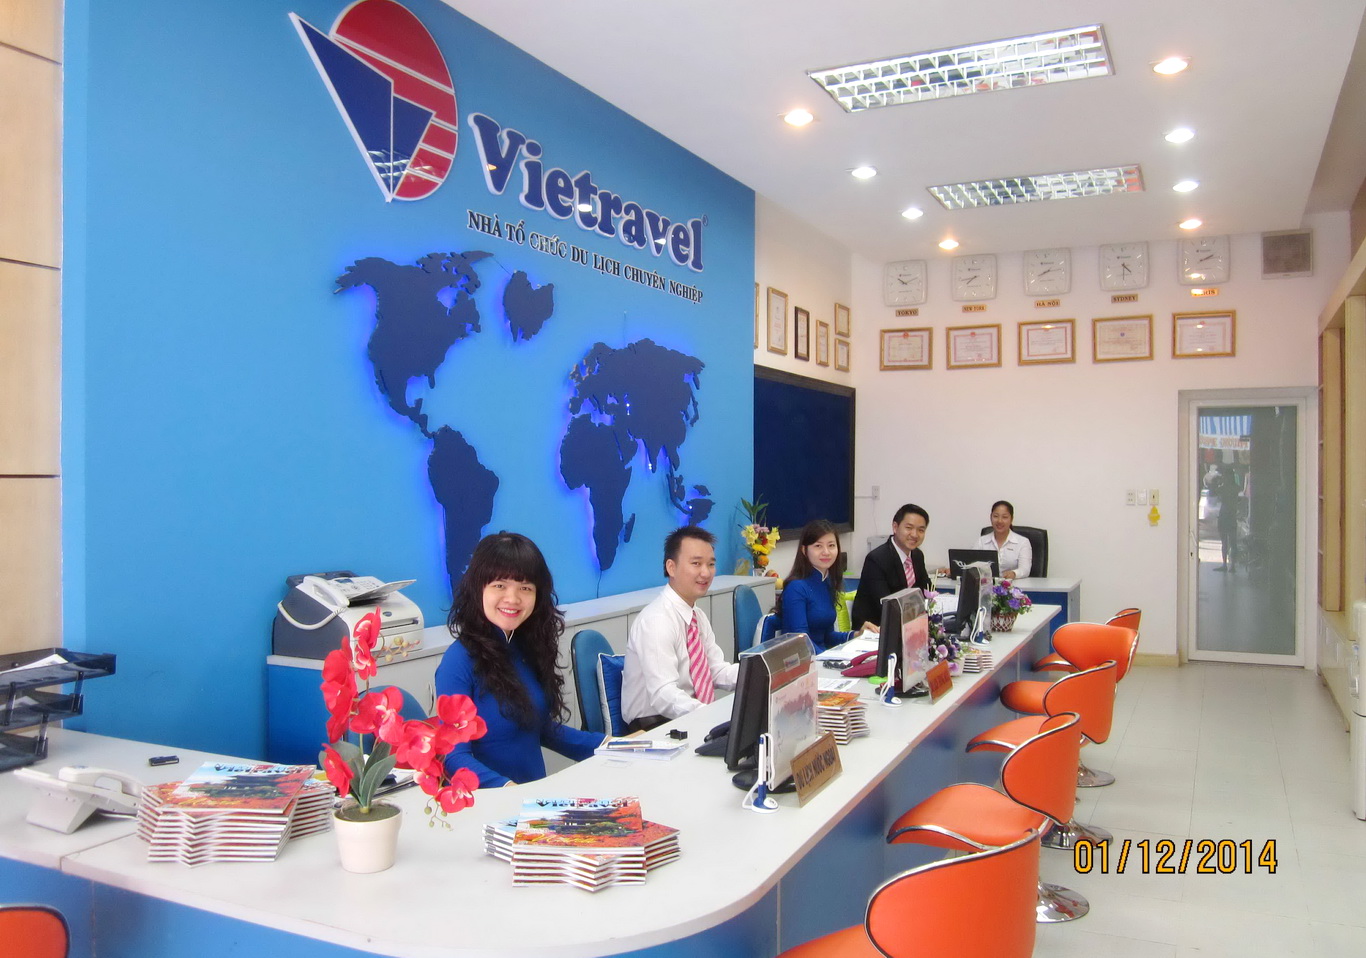 Vietravel Rạch Giá chính thức hoạt động từ ngày 1/12/2014